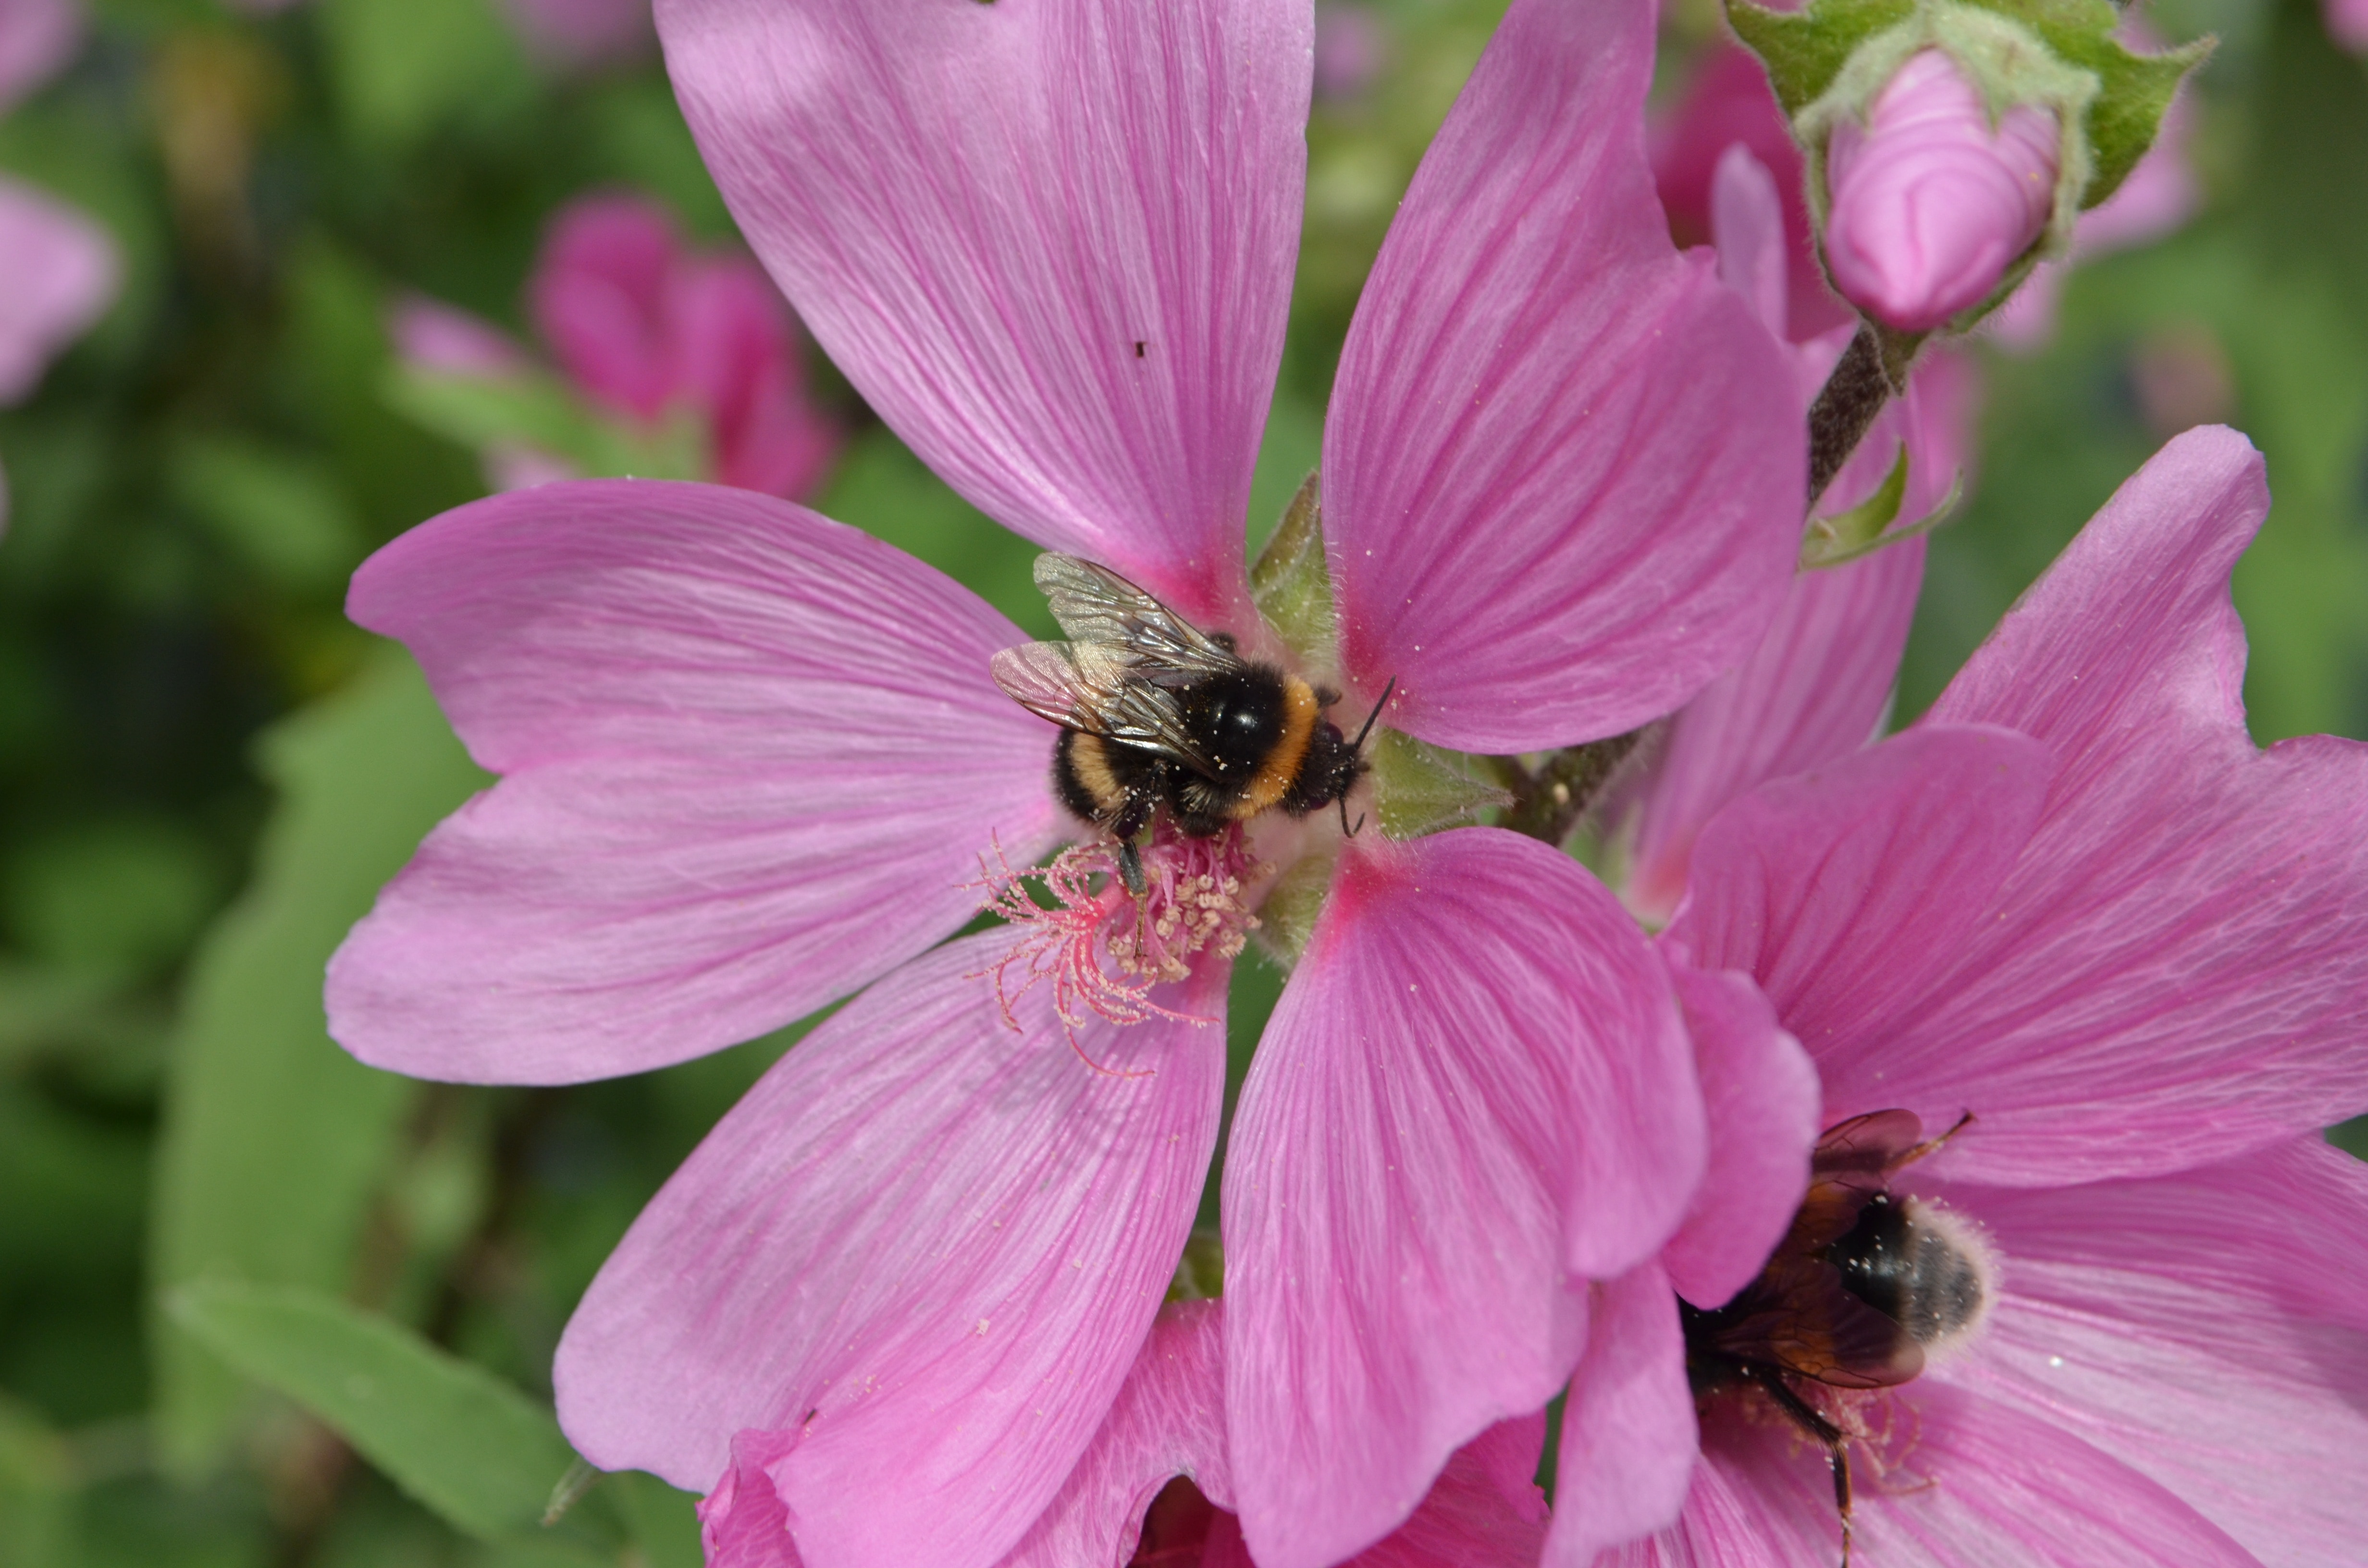 Propagation, Pollen, Bumblebee, Bug, flower, one animal